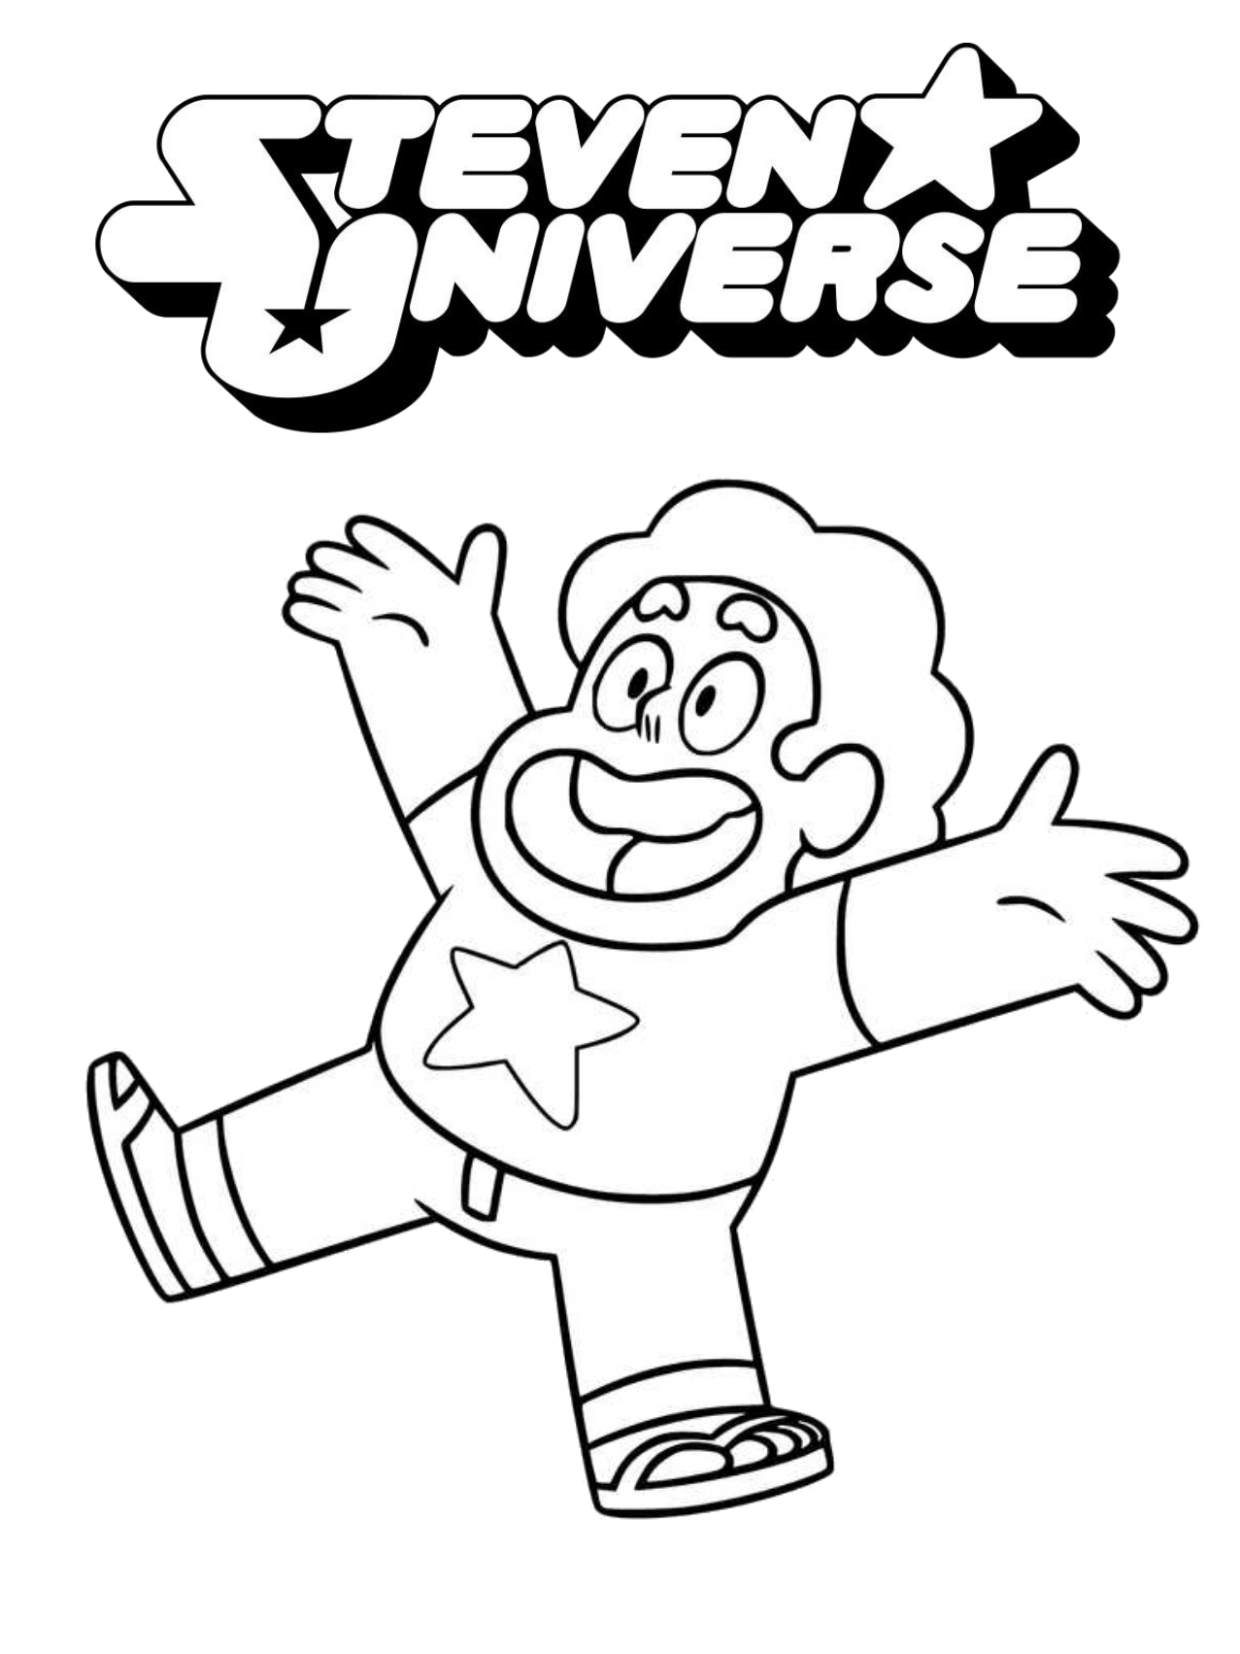 Steven universe color pages